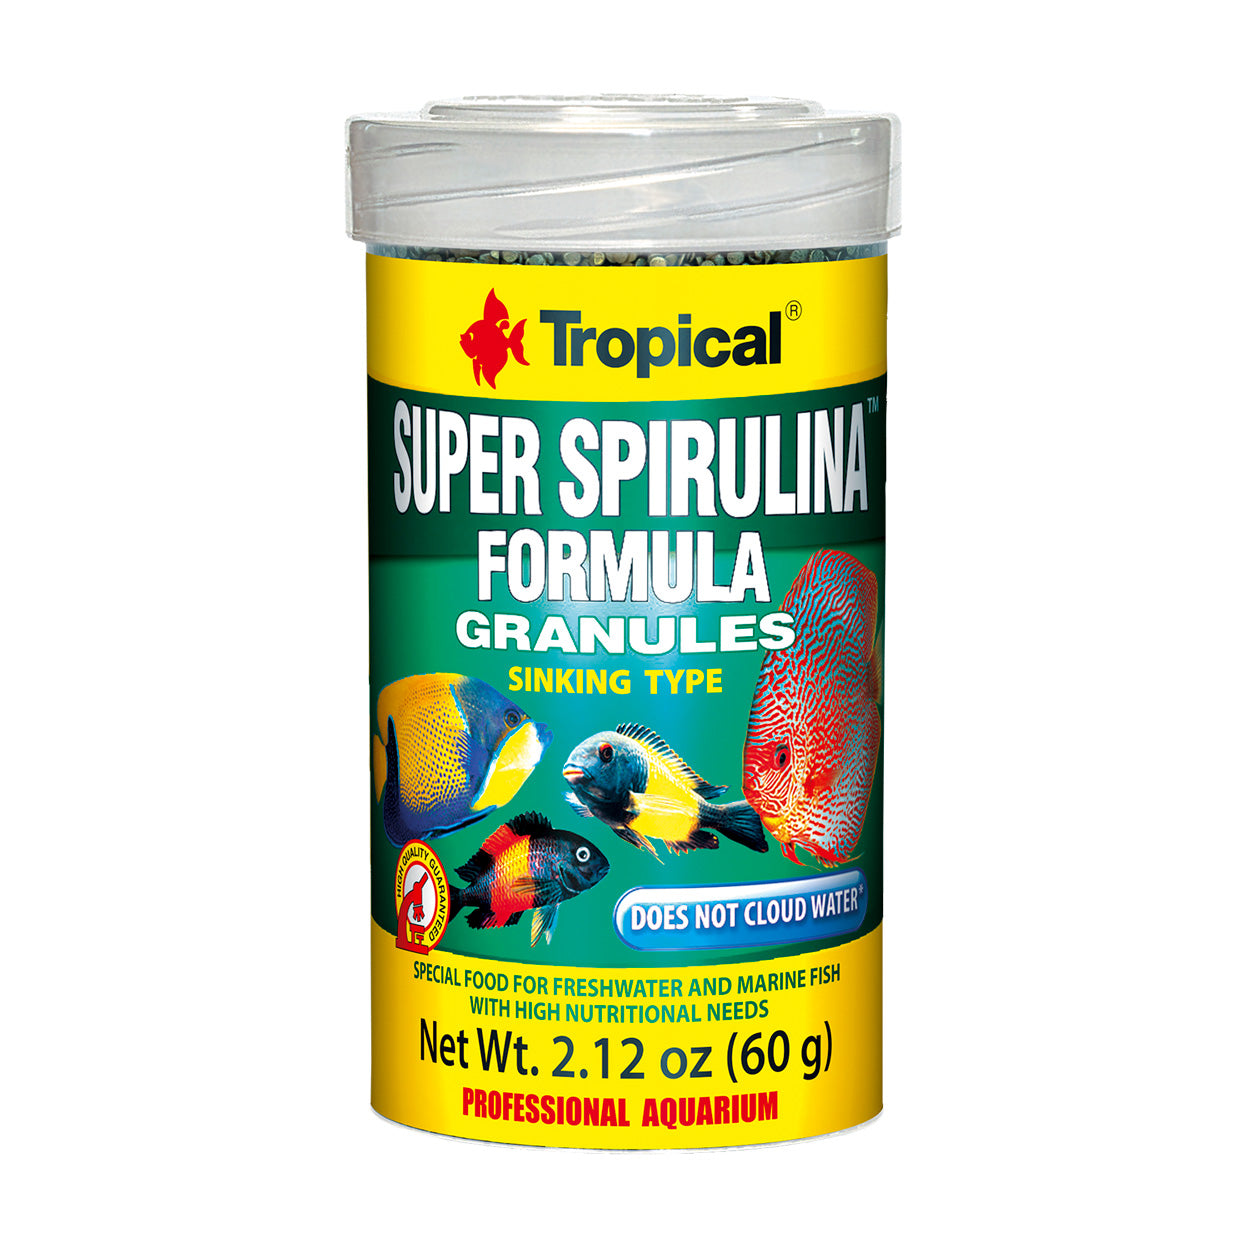 Tropical Super Spirulina Granules